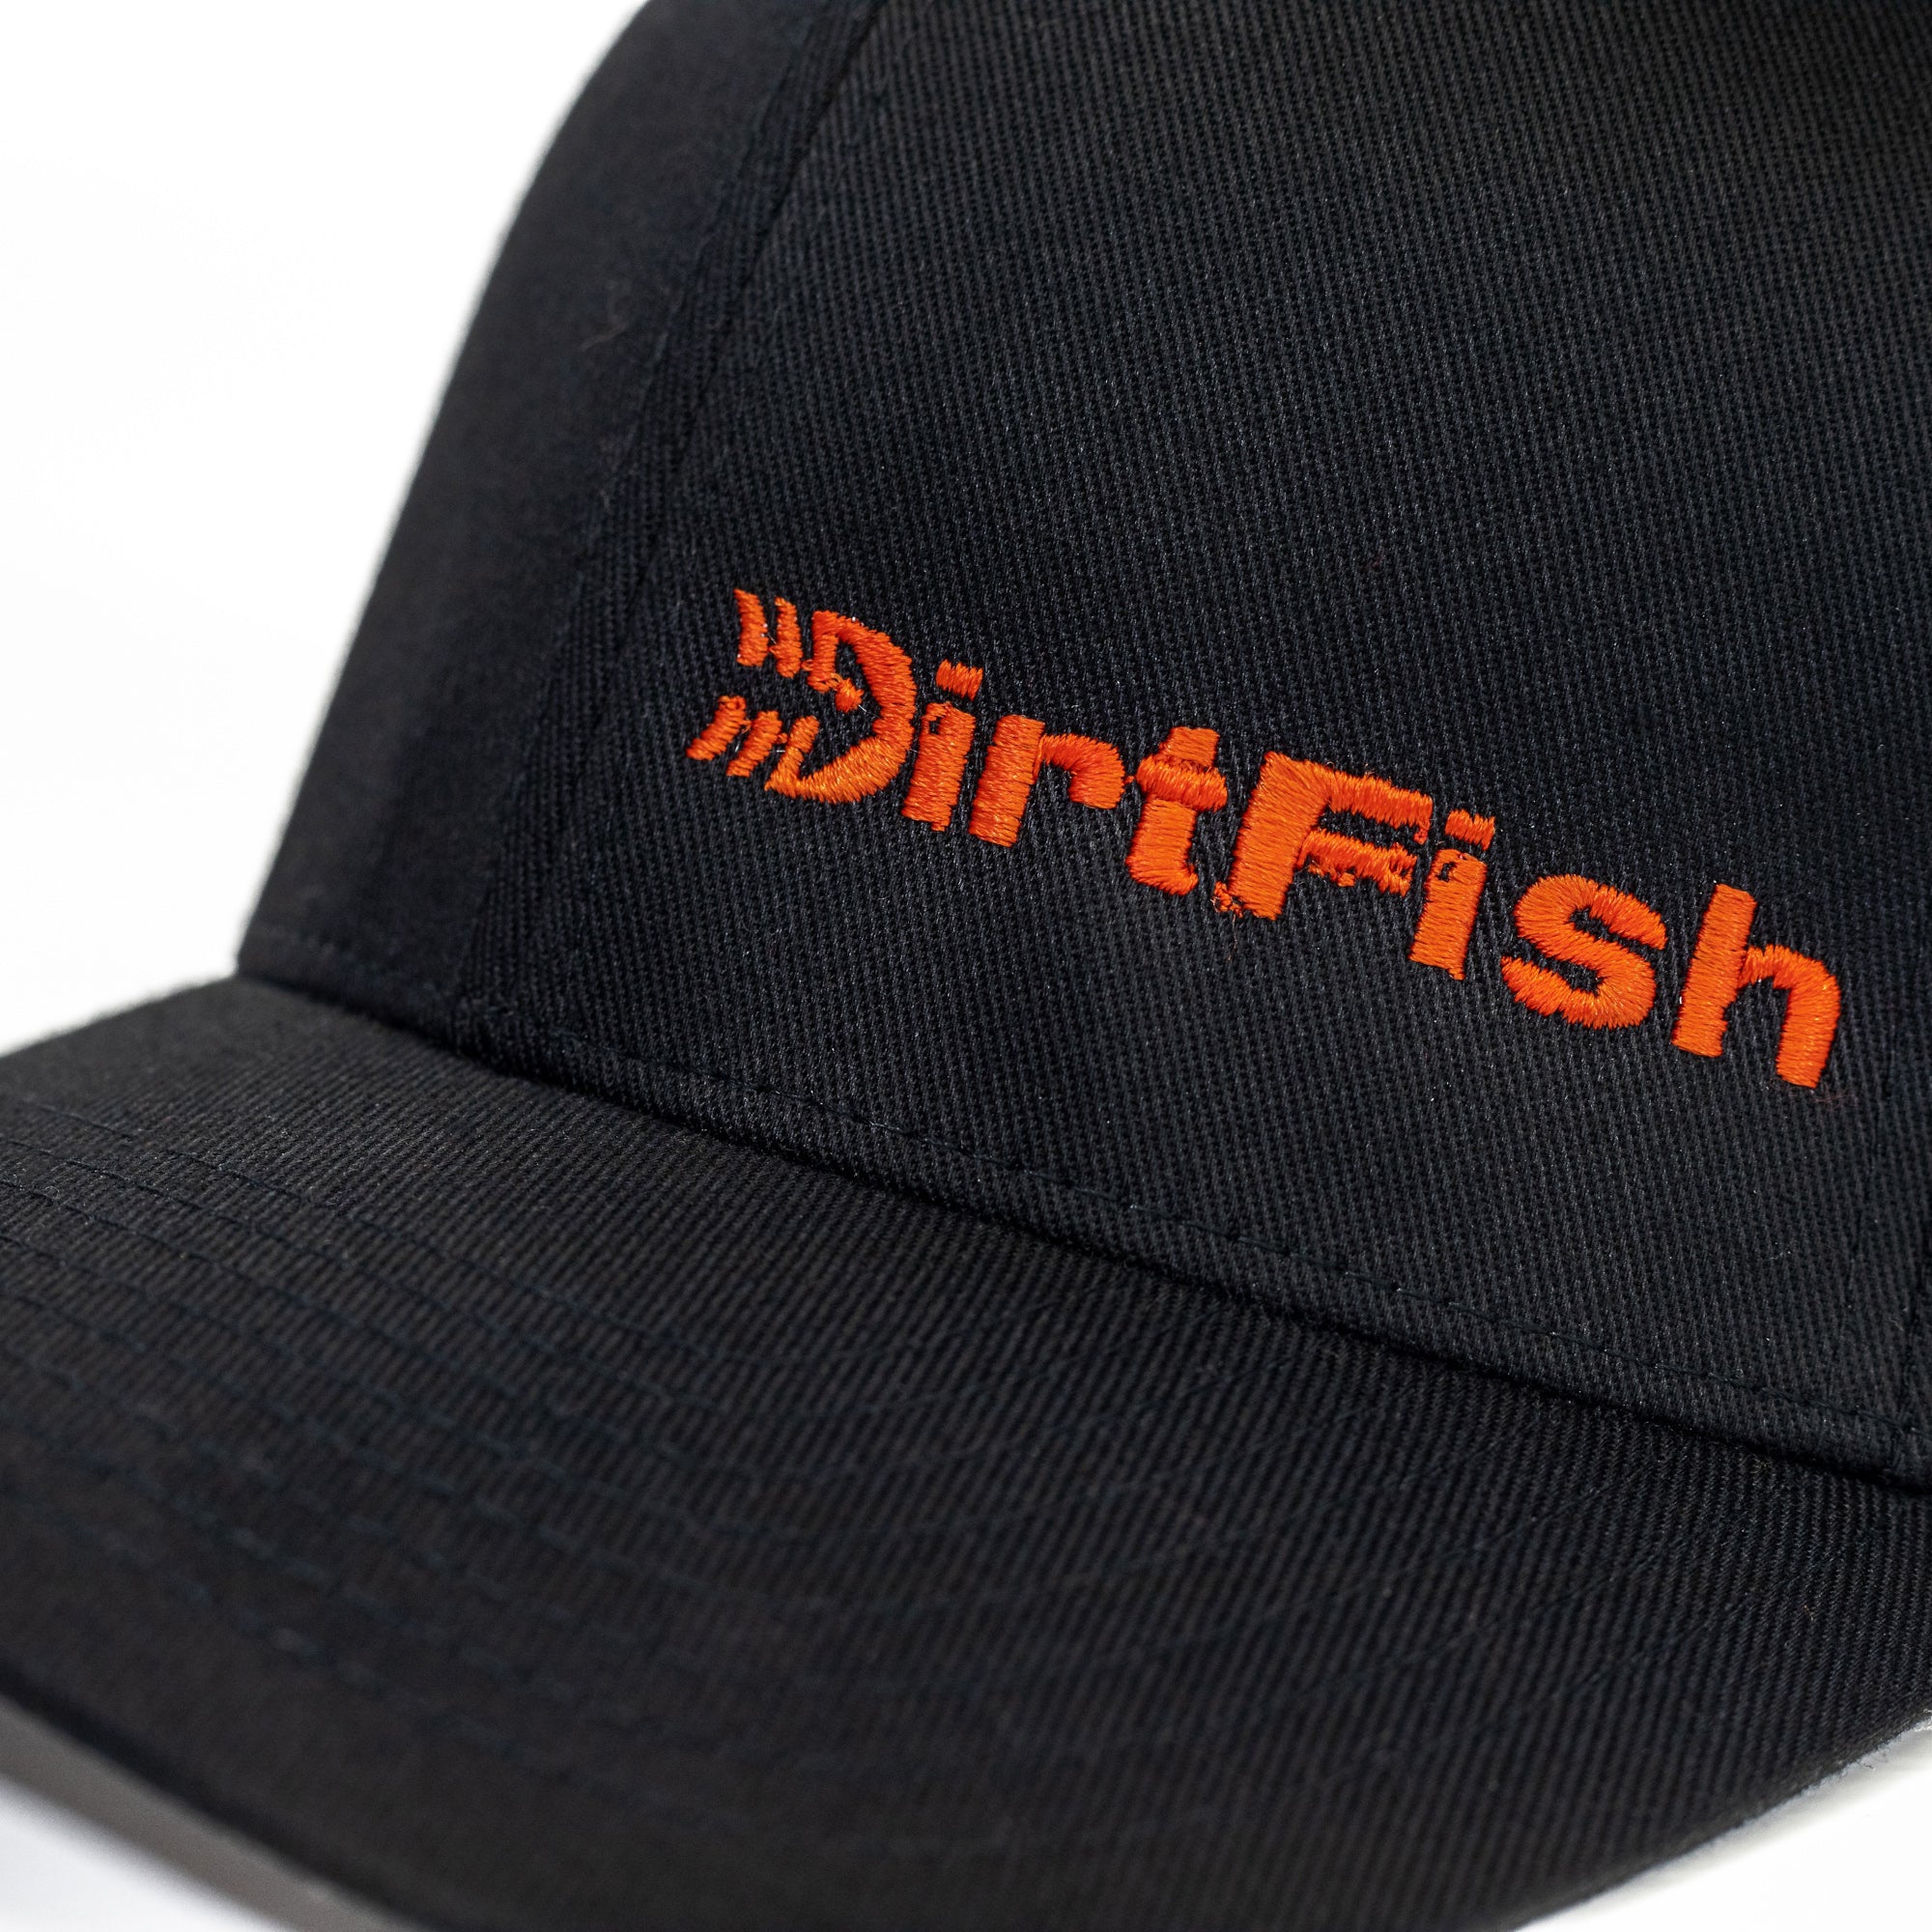 DirtFish Understeer - Flex-fit Shop Hat